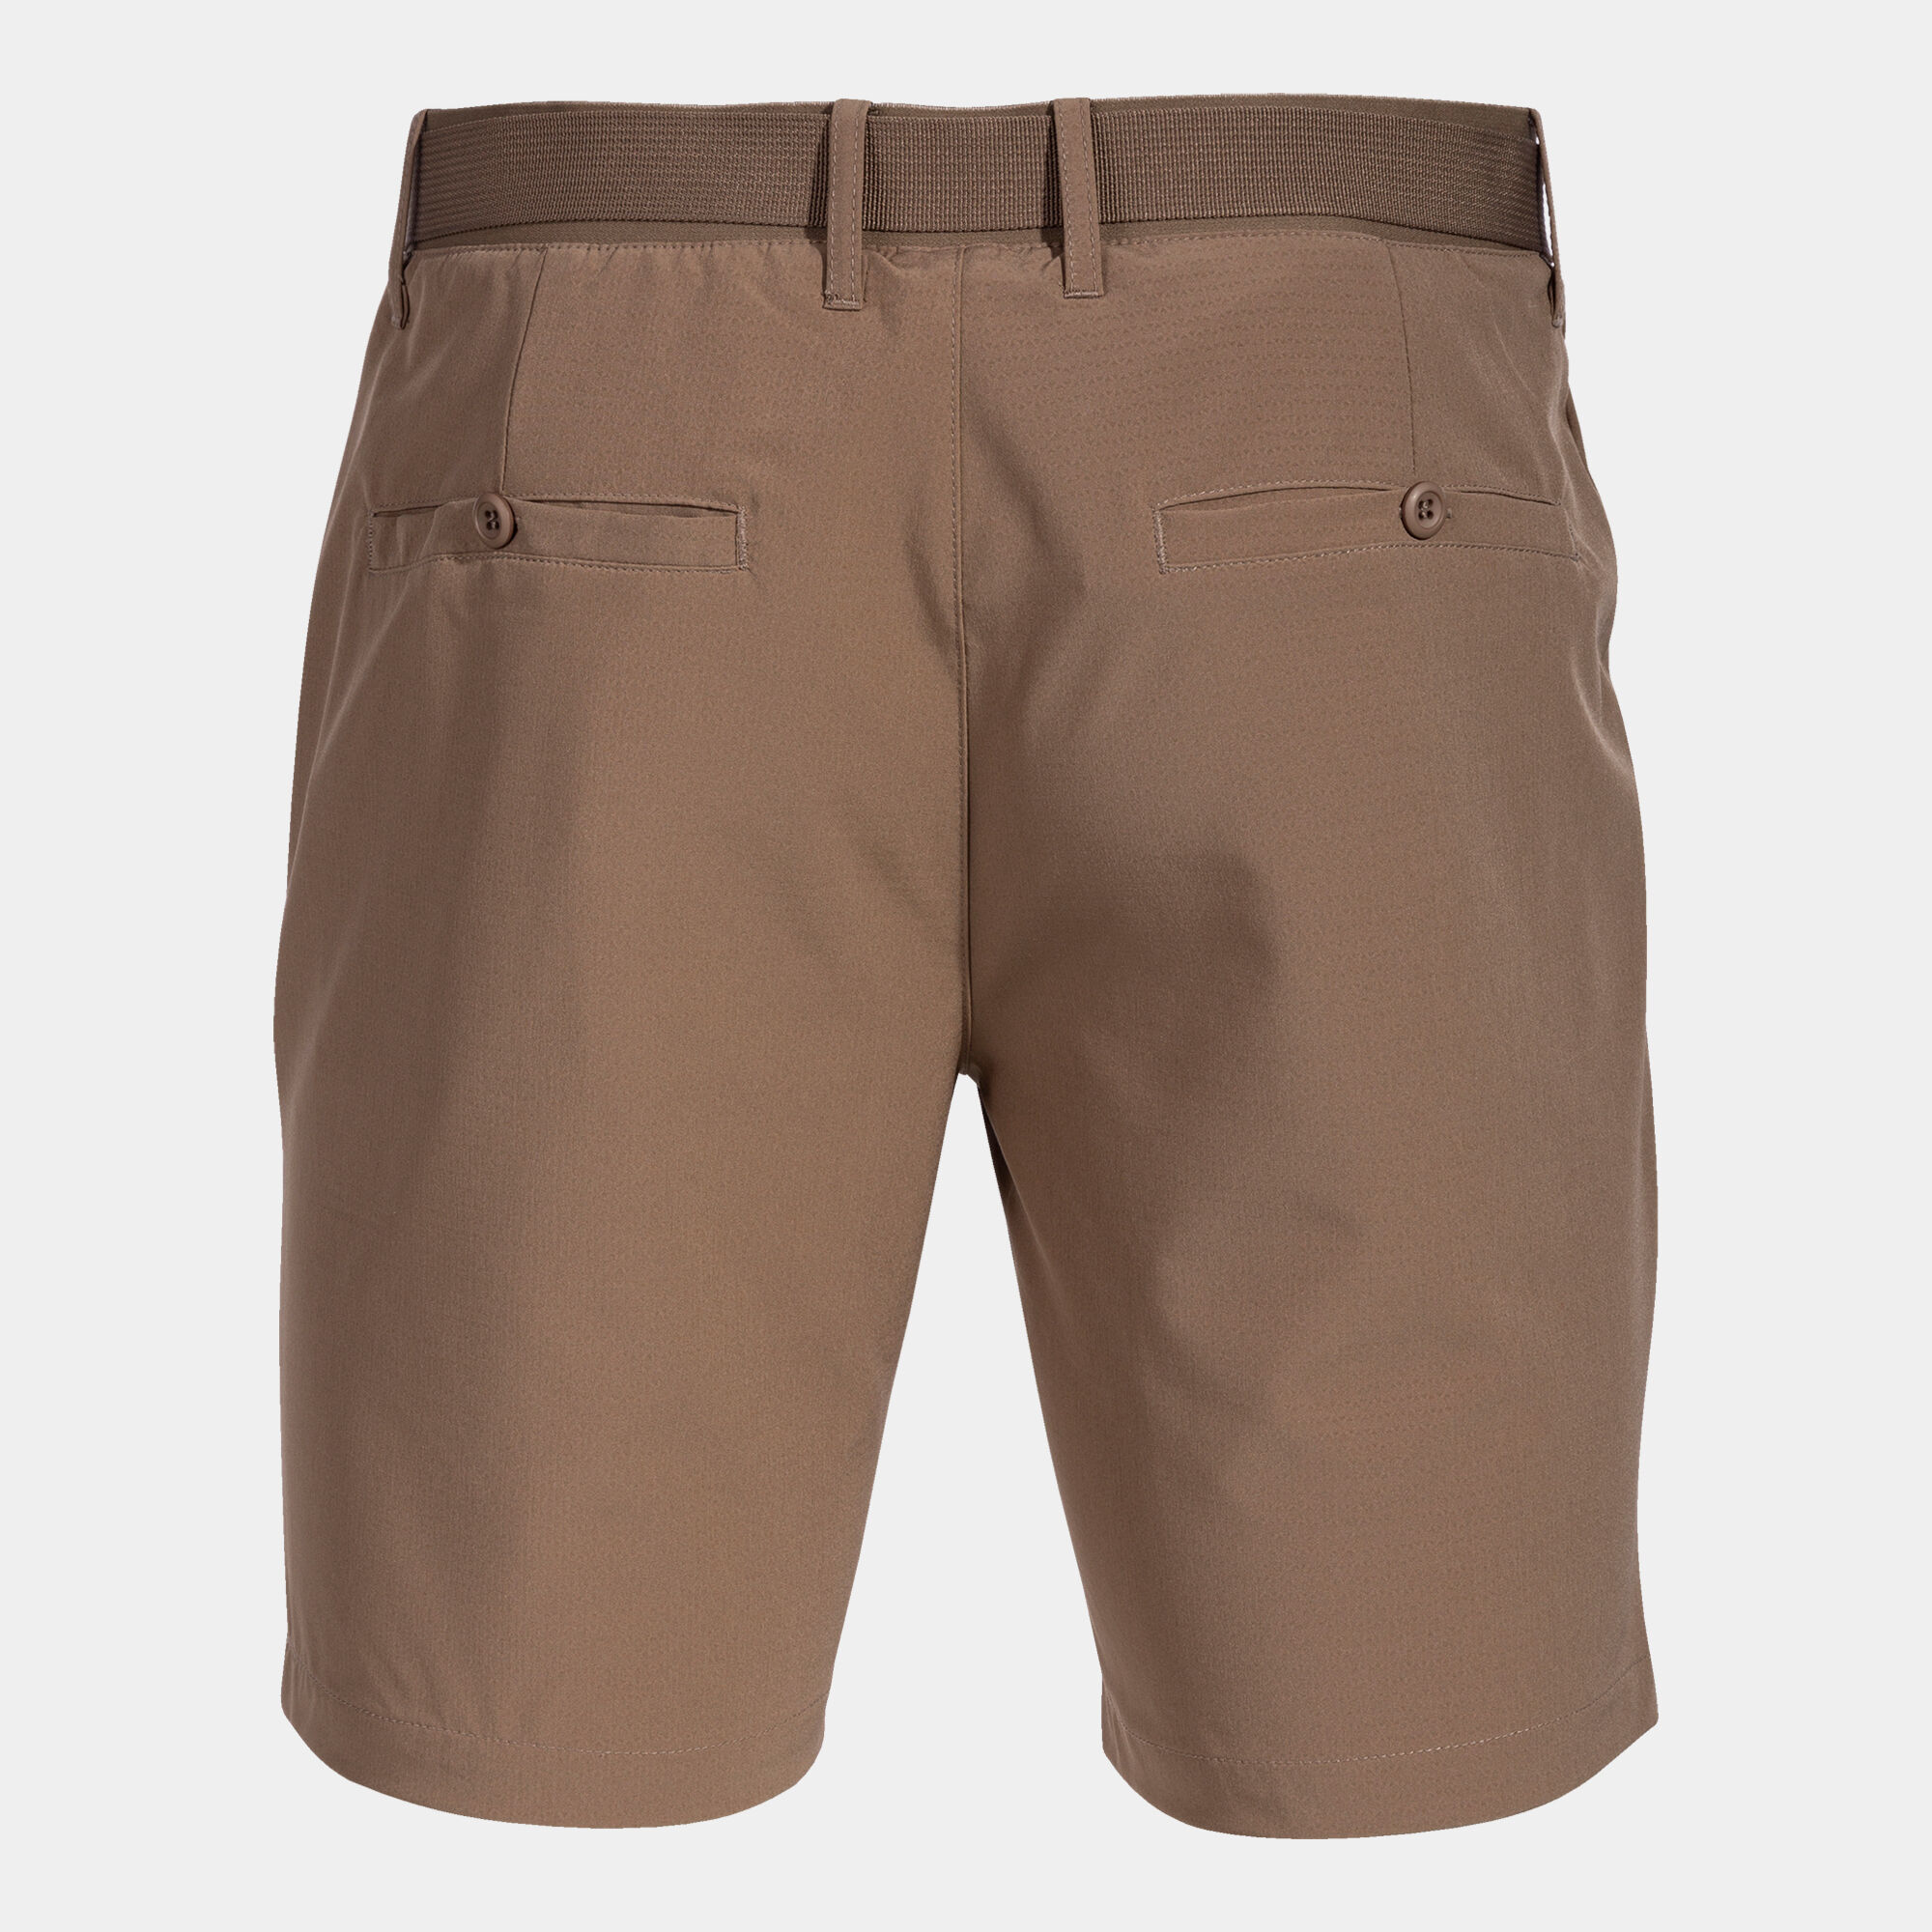 Bermuda shorts man Pasarela III brown